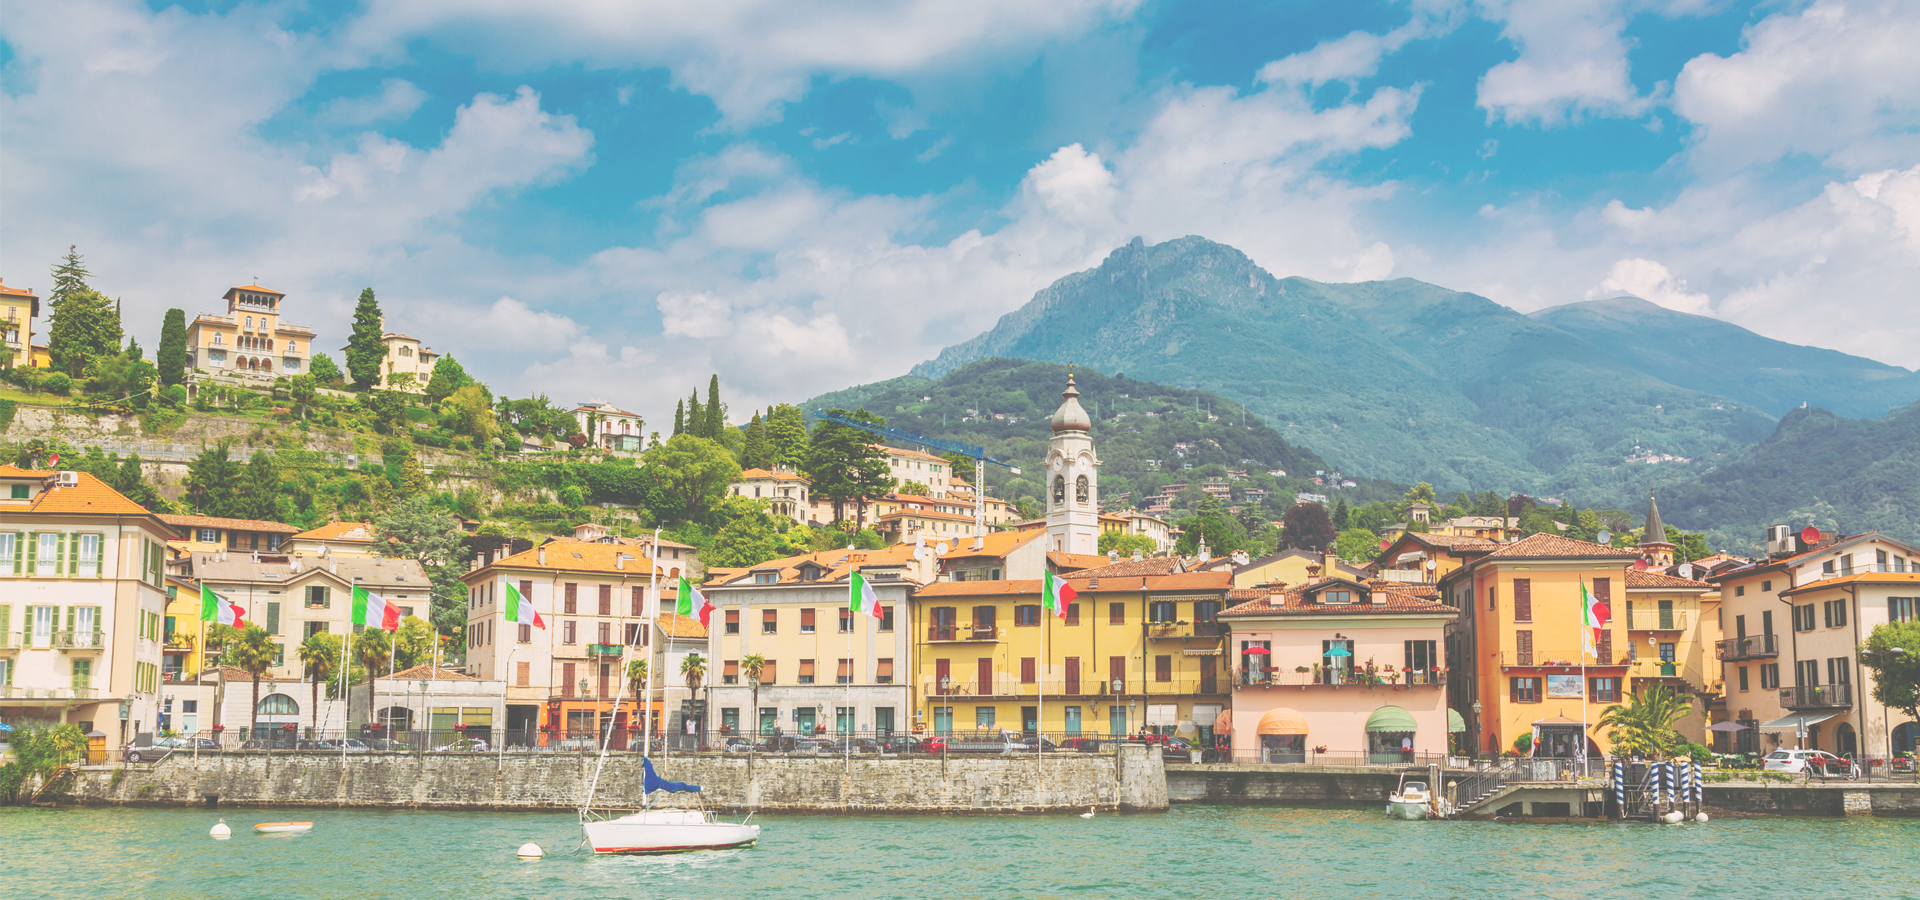 Menaggio town, Lake Como, Lombardy region, Italy